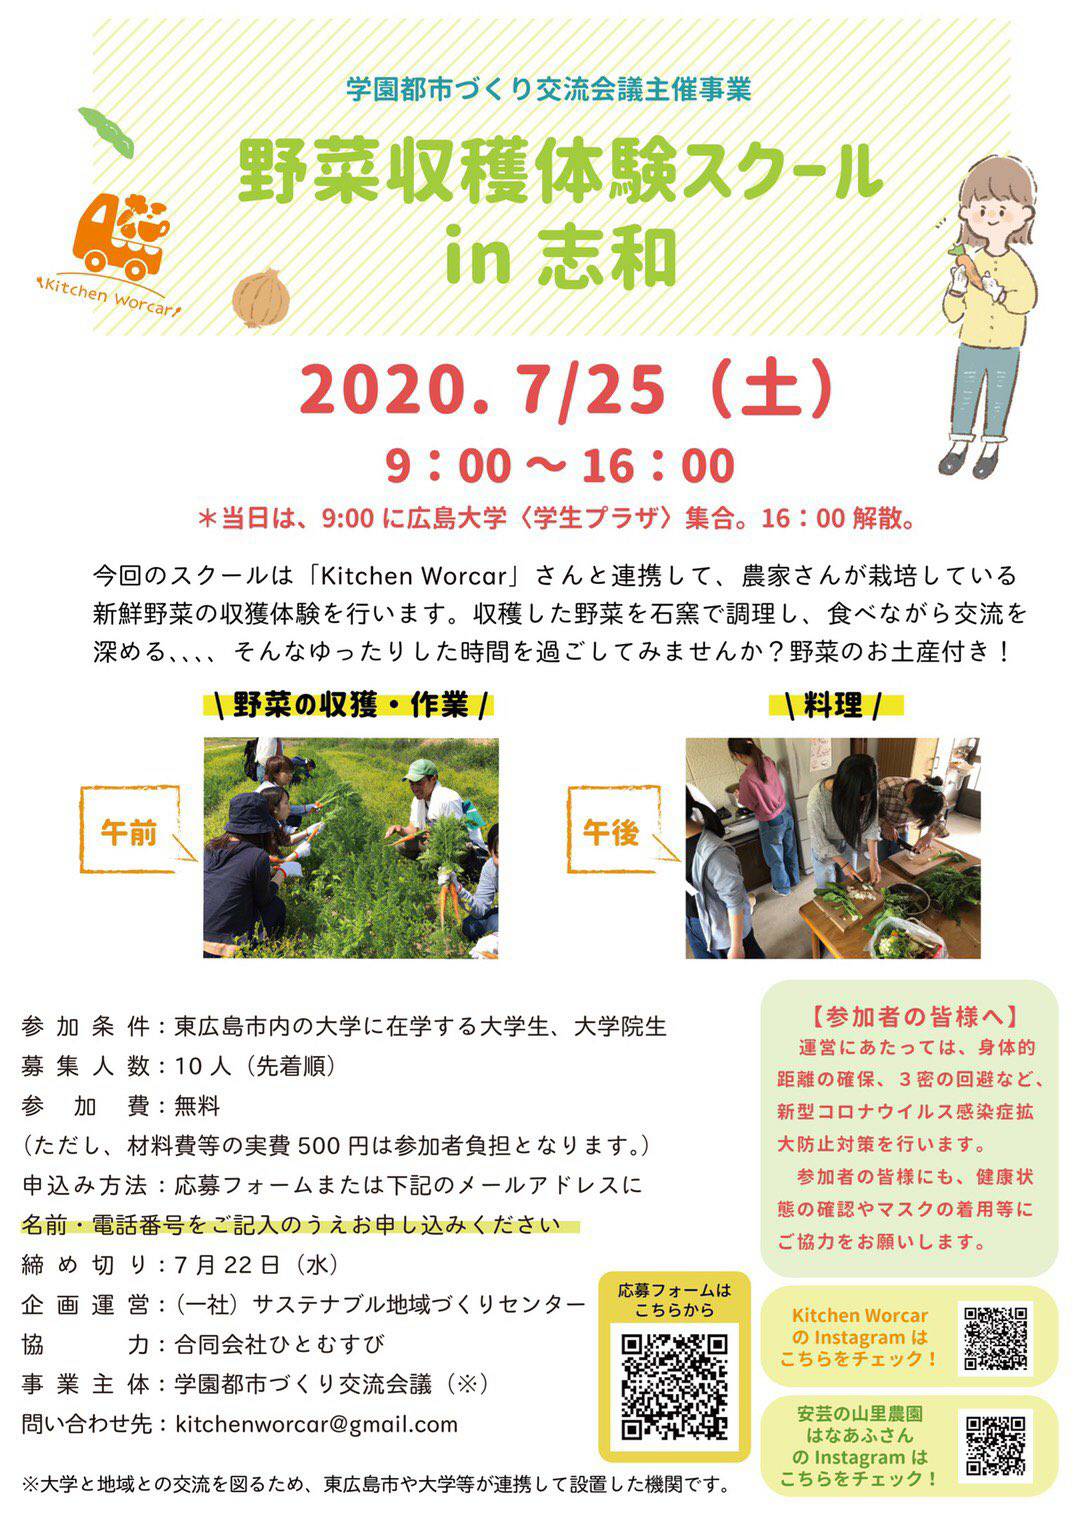 地域体験ツアー（野菜収穫体験in志和）の参加者を募集します！